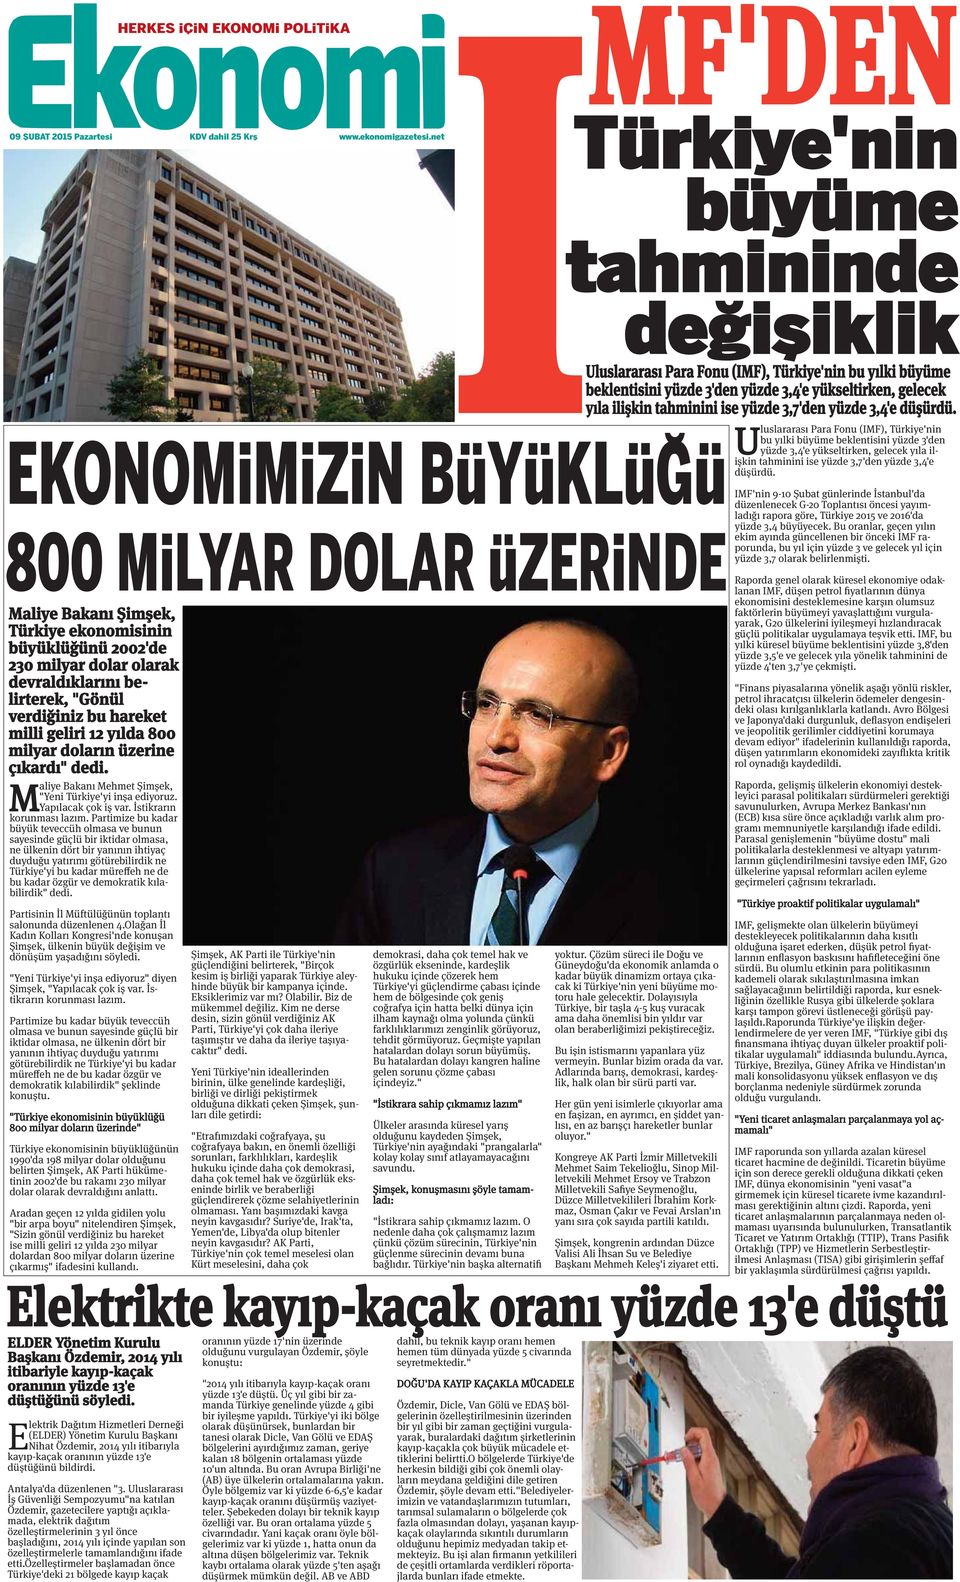 milli geliri 12 yılda 800 milyar doların üzerine çıkardı" dedi. M aliye Bakanı Mehmet Şimşek, "Yeni Türkiye'yi inşa ediyoruz. Yapılacak çok iş var. İstikrarın korunması lazım.